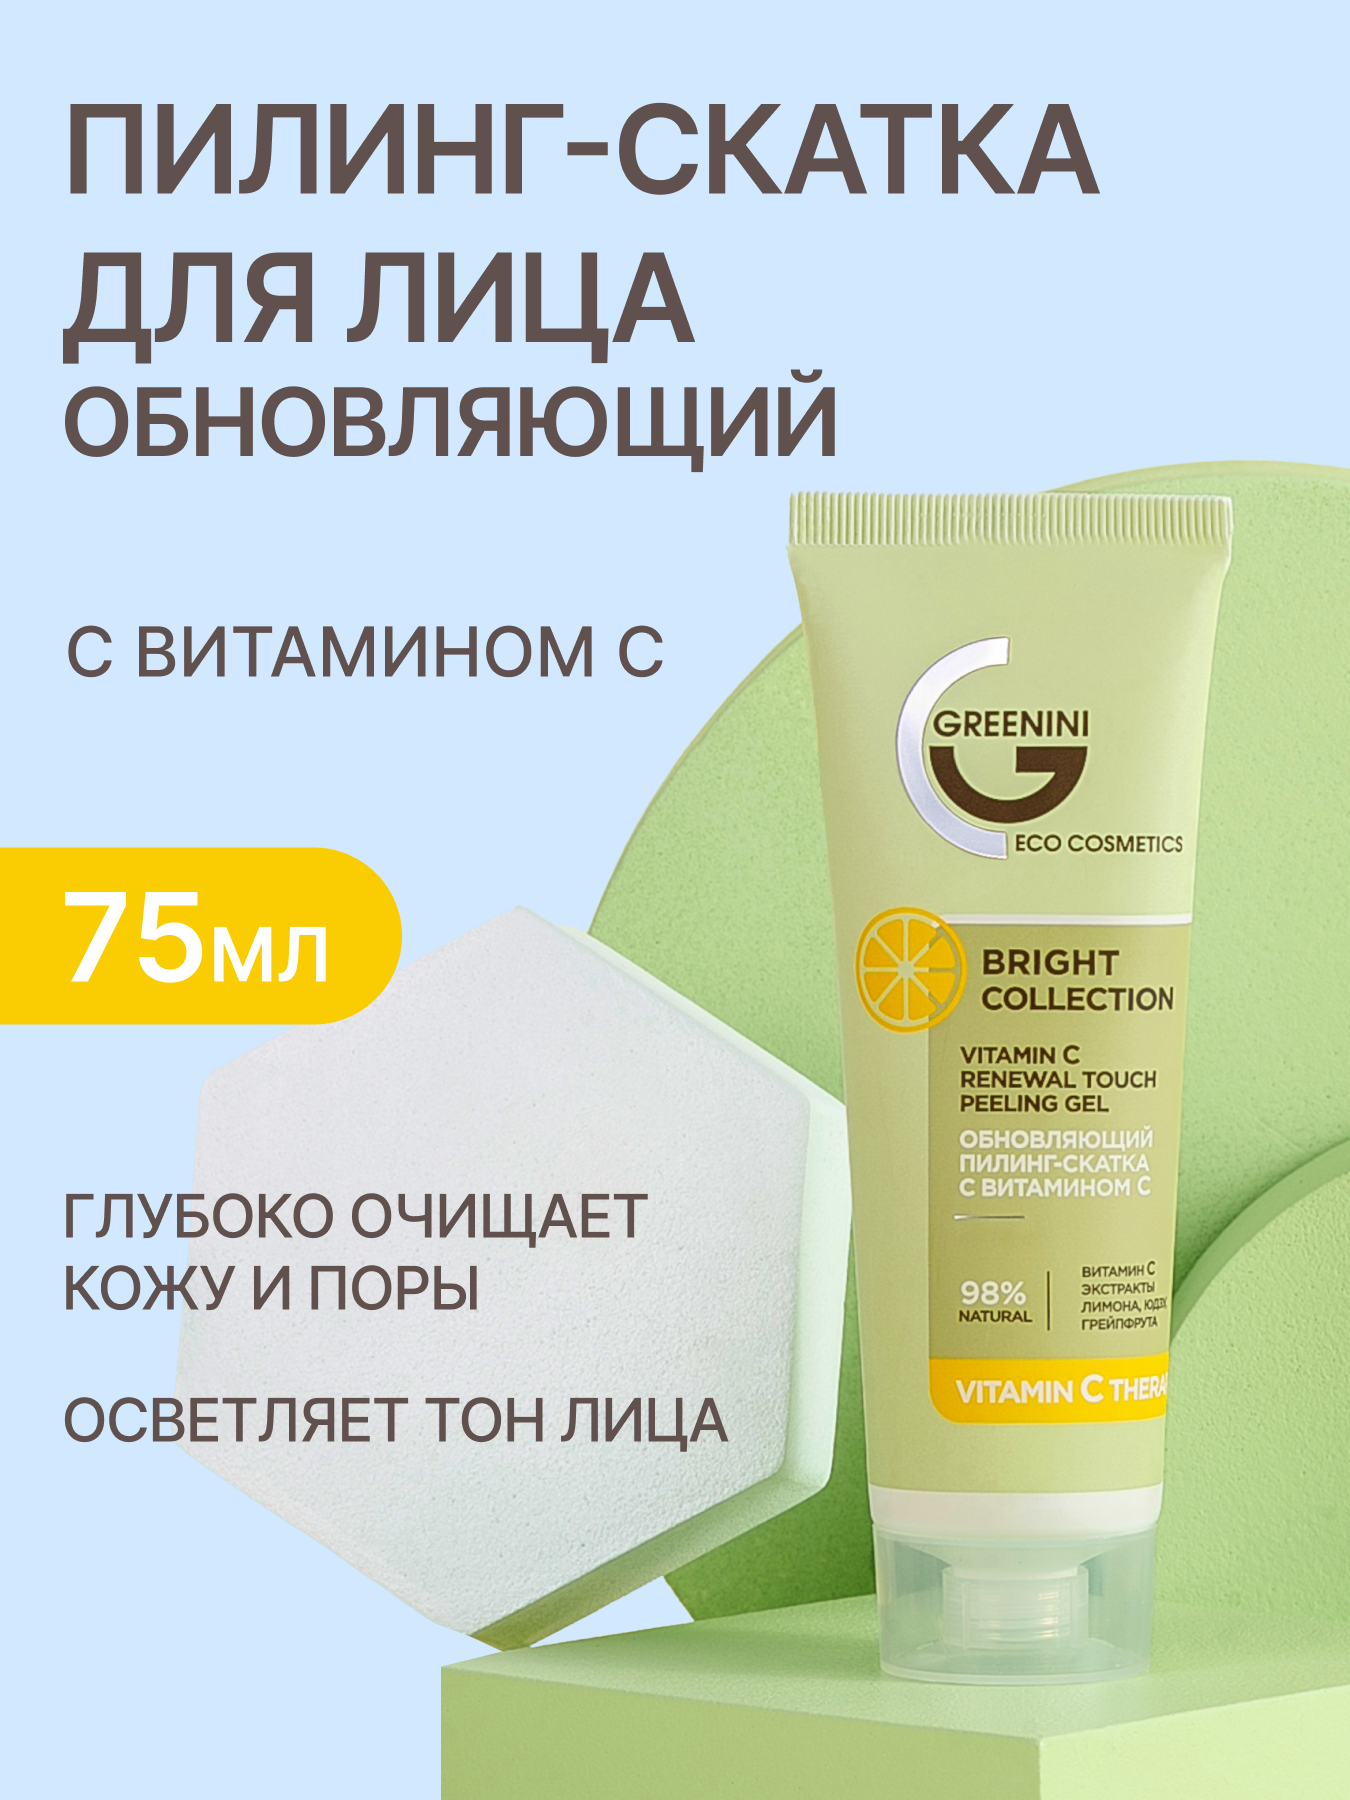 Greenini Обновляющий пилинг-скатка с витамином С для бережного очищения кожи лица 98% Natural 75мл